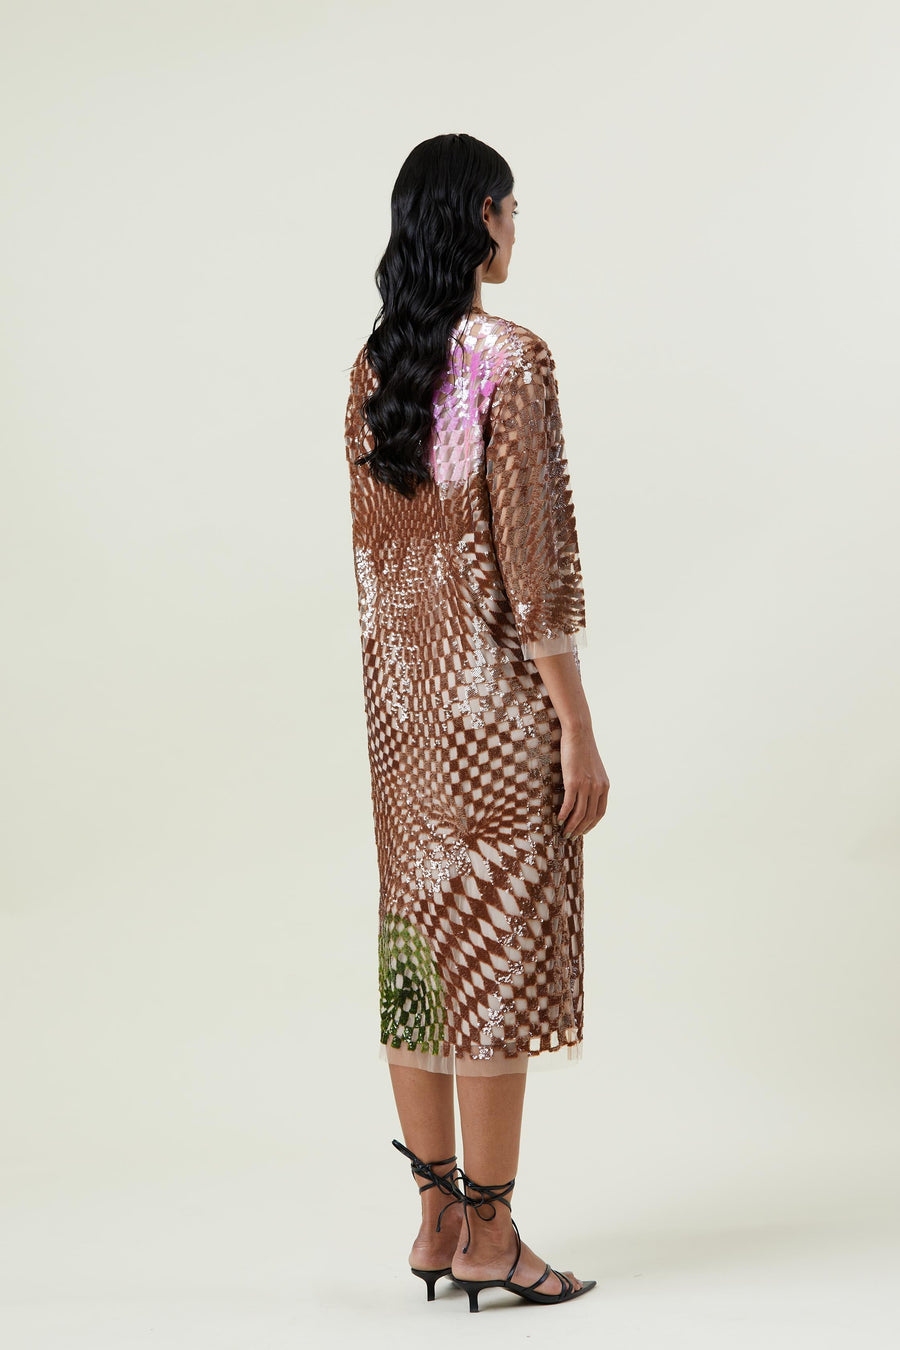 'WARPED MATTER' EMBELLISHED DRESS - Kanika Goyal Label